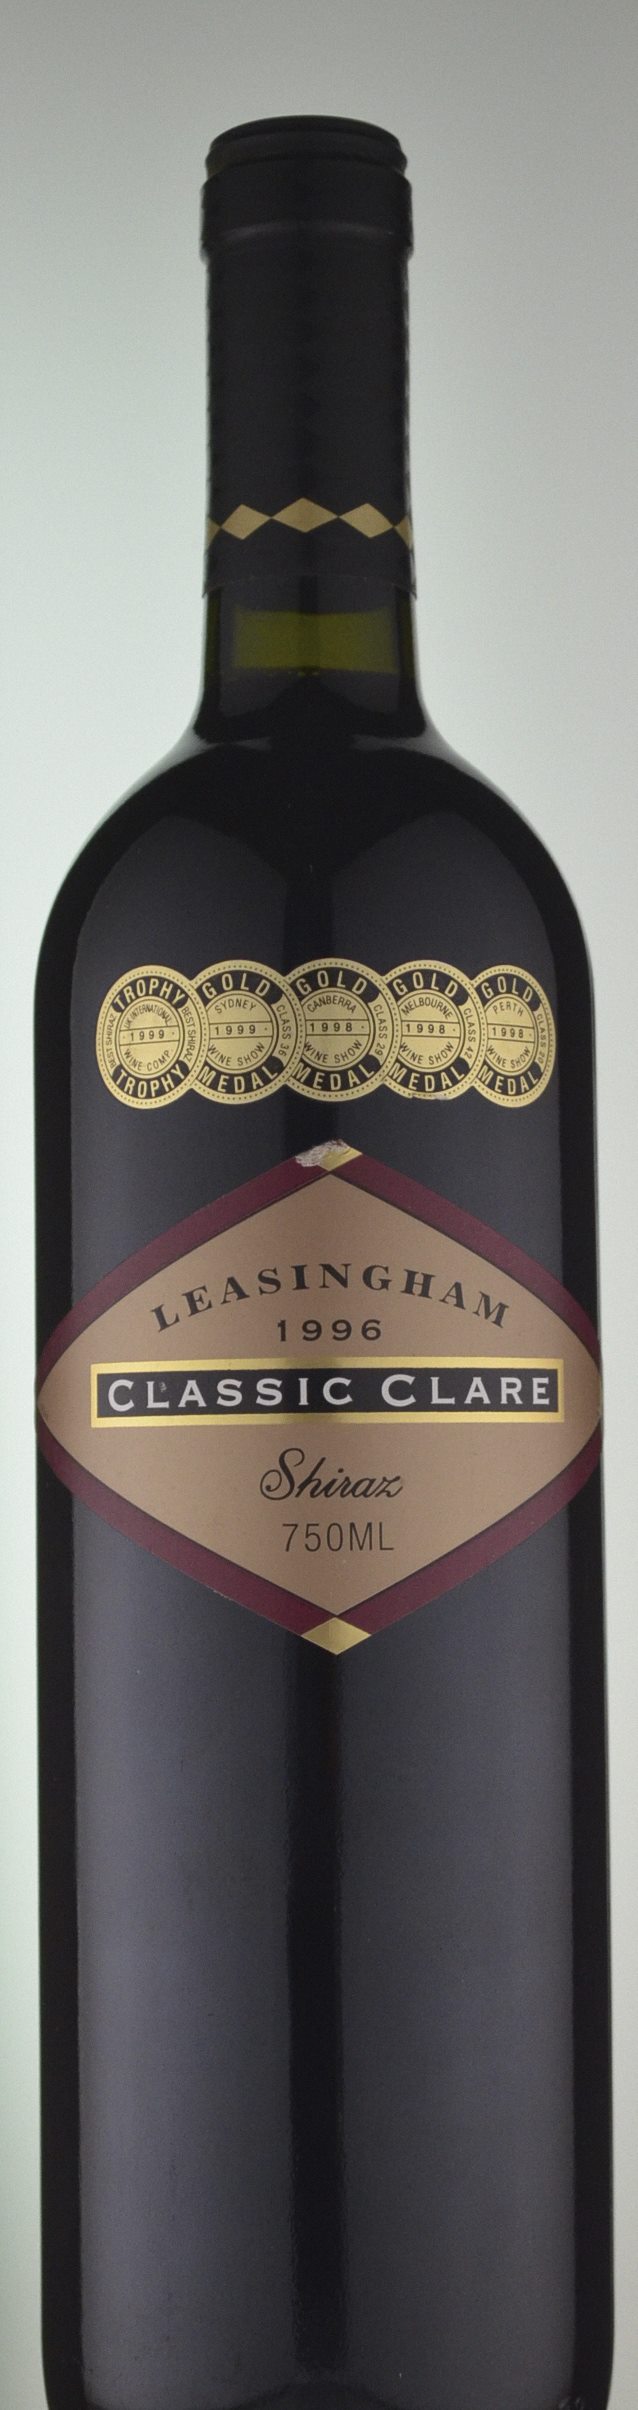 Leasingham Classic Clare Shiraz 1996